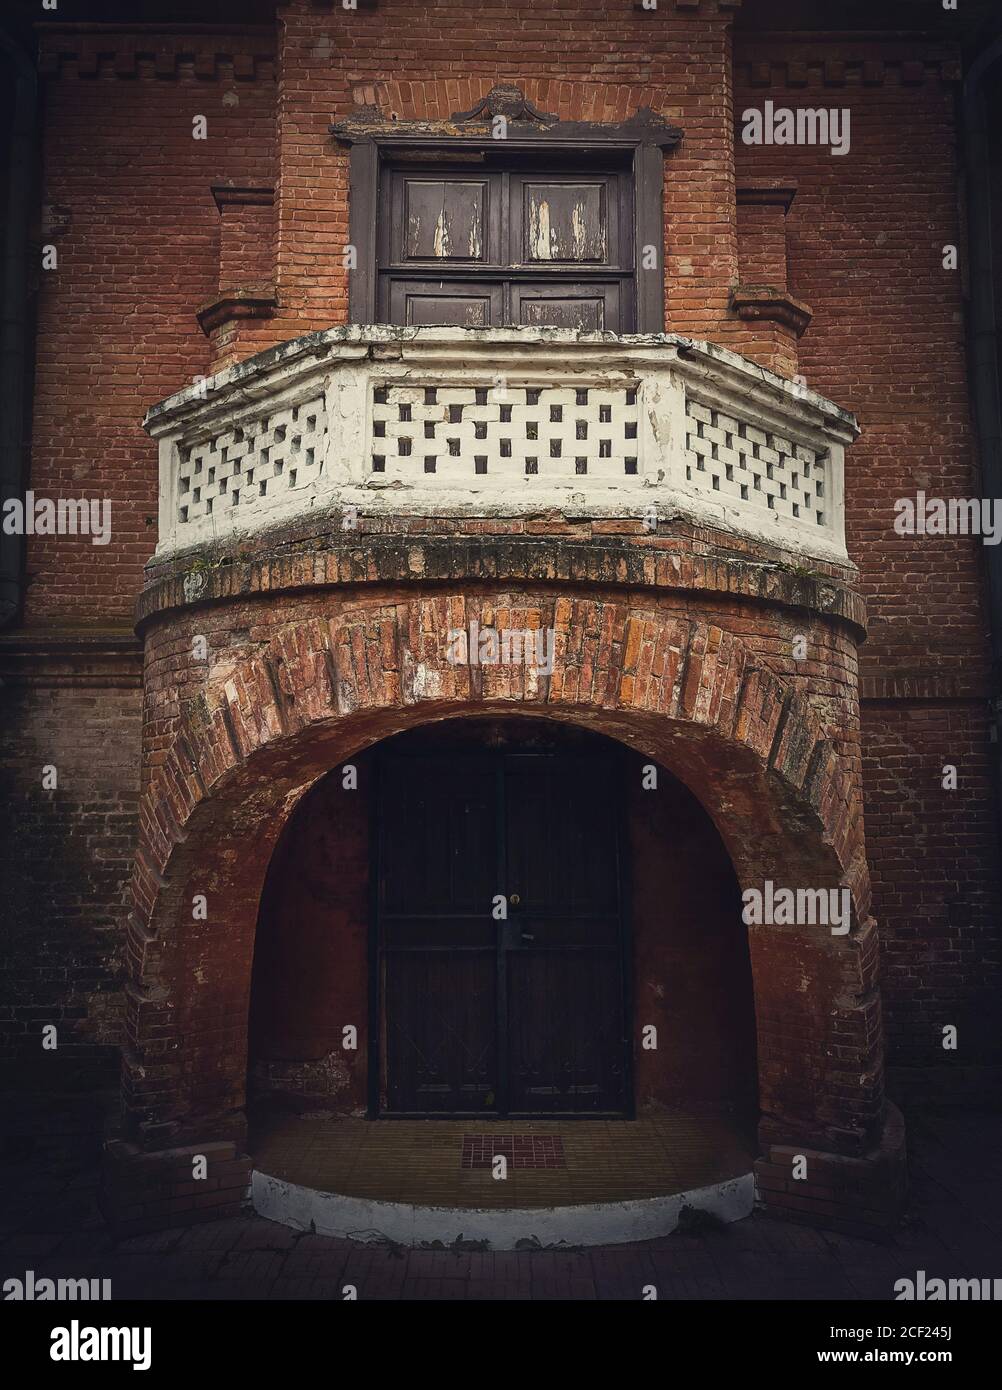 Architektur Details, die Eingangstür mit dem Balkon der Jagdschloss in Manuc bei Herrenhaus, Moldawien. Alte Backsteinfassade. Halloween-Haunte Stockfoto